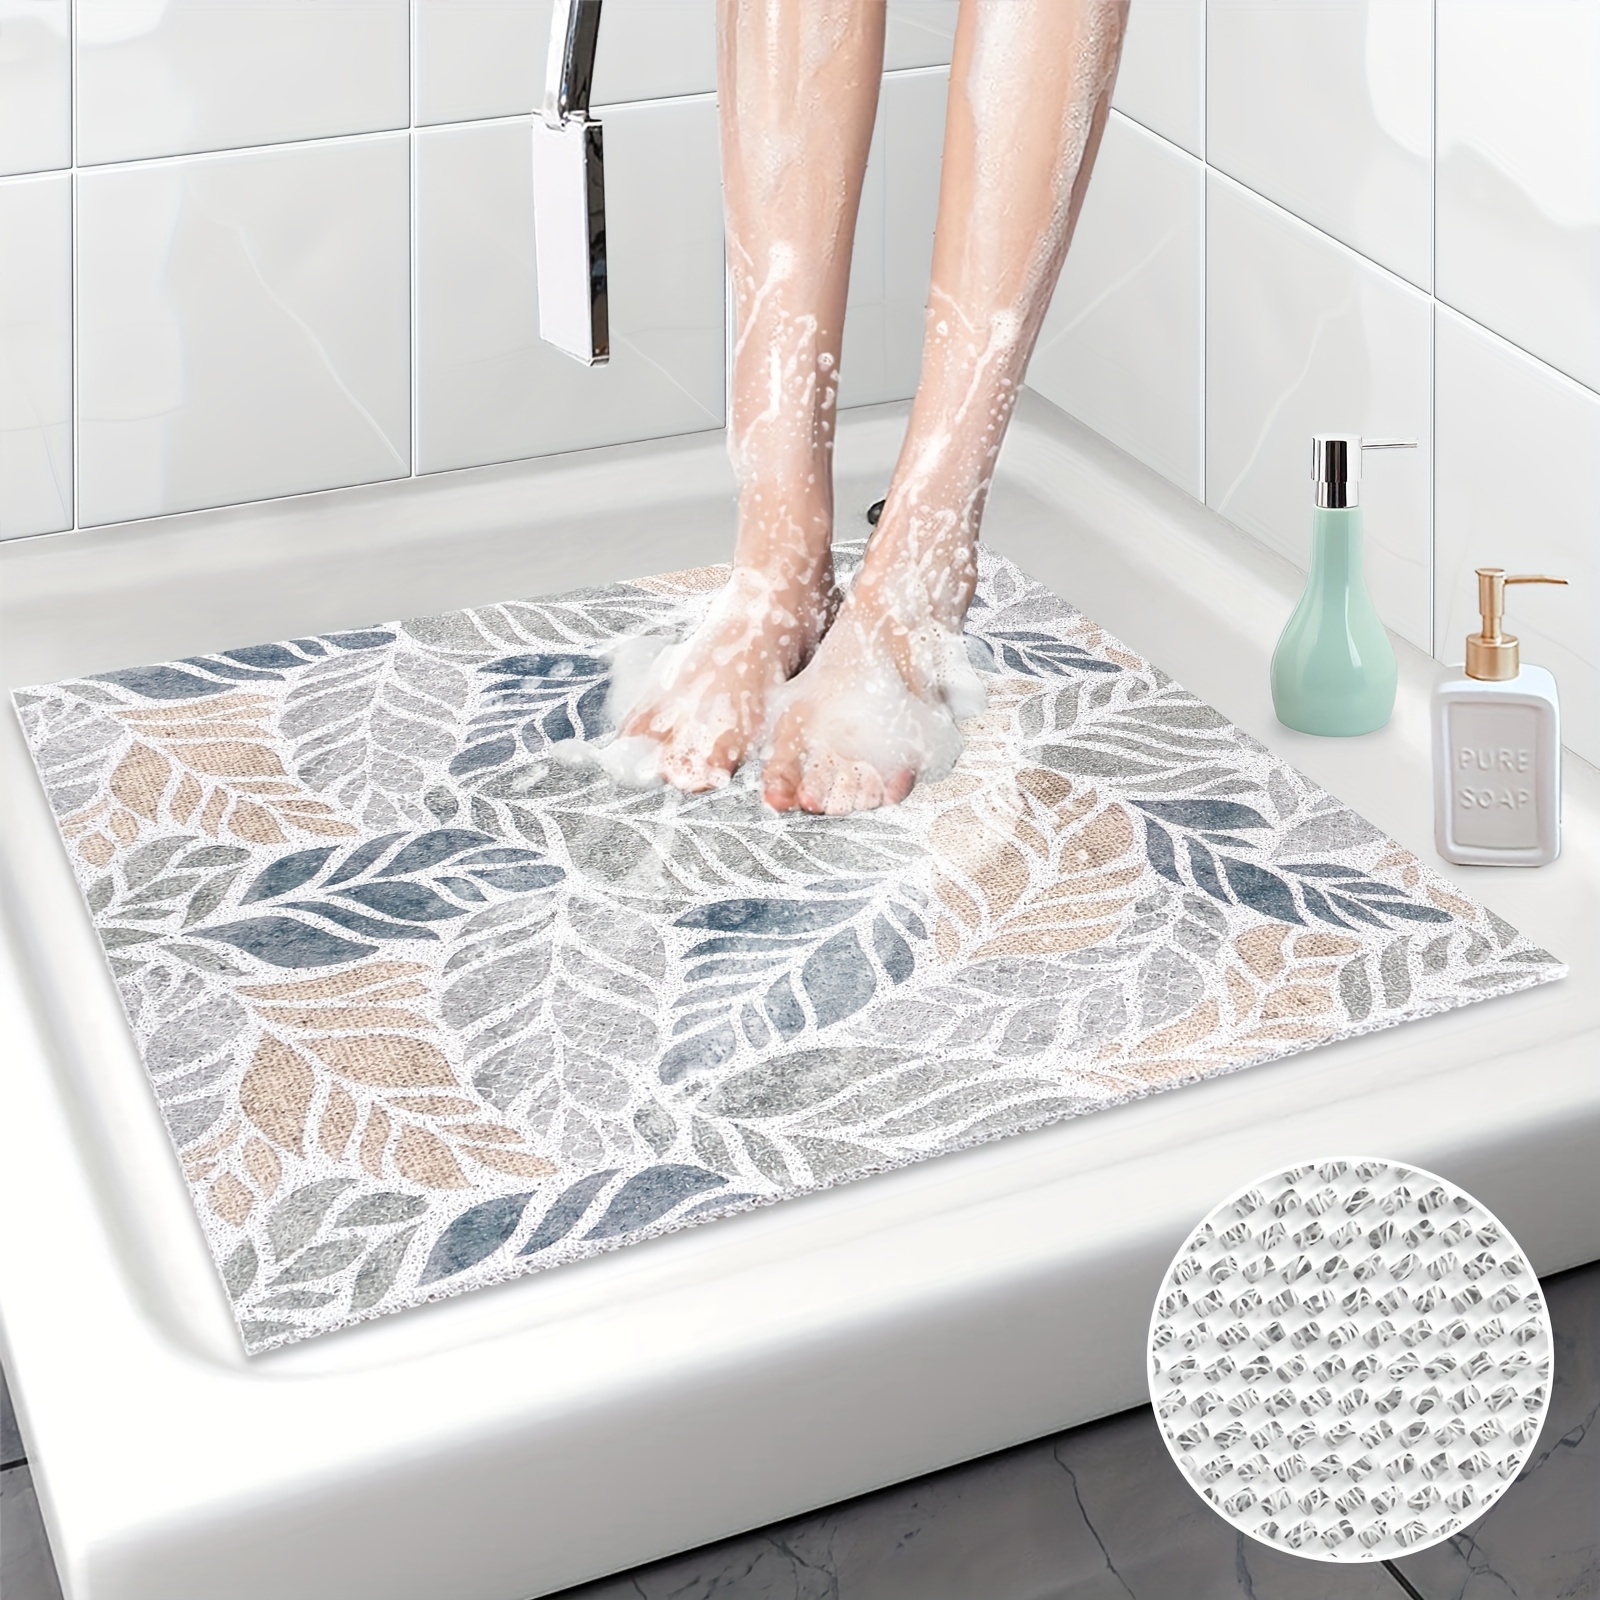 Tappetini da bagno antiscivolo zerbini tappeti e tappetini da bagno tappeto  con fori di scarico Home Spa Sauna palestra bagno doccia - AliExpress